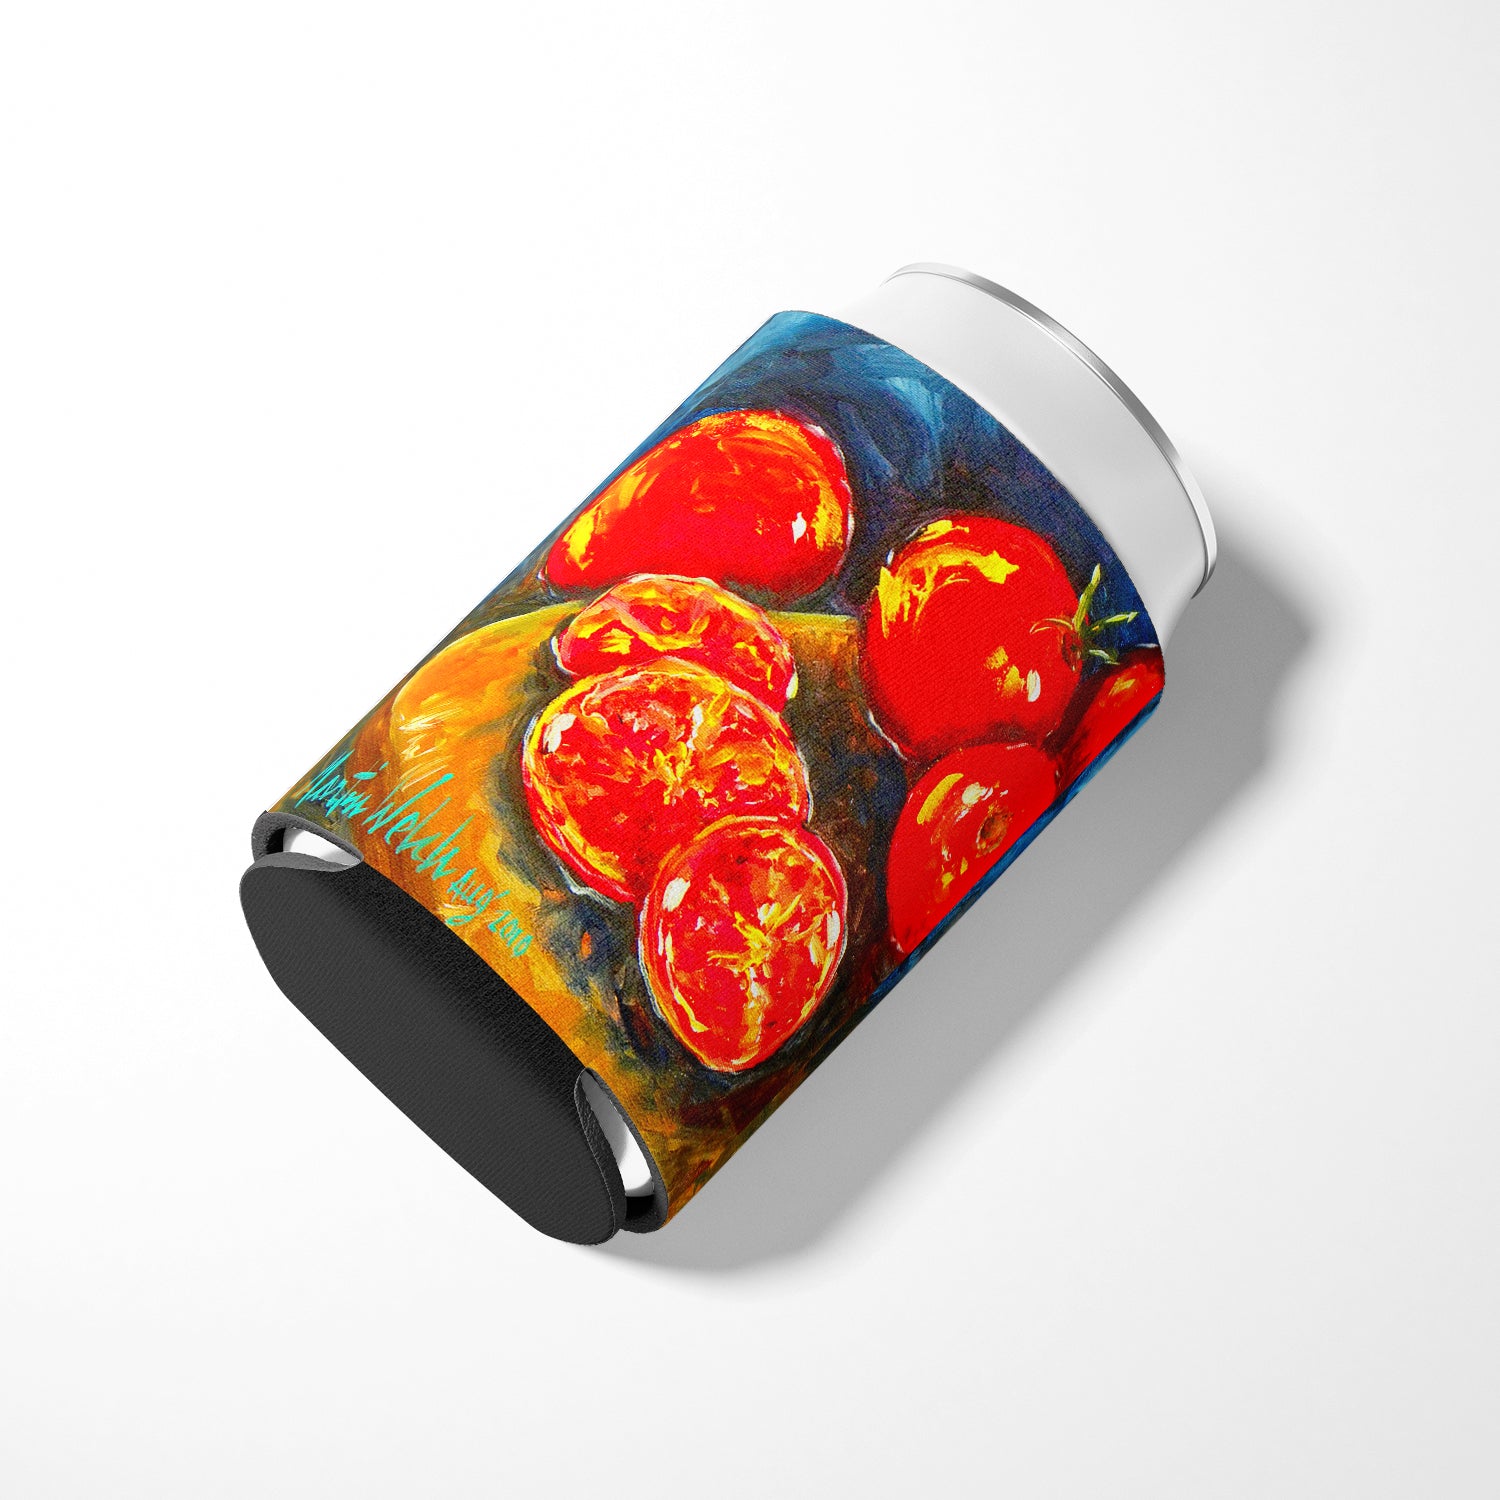 Vegetables - Tomato Slice It Up Can or Bottle Beverage Insulator Hugger